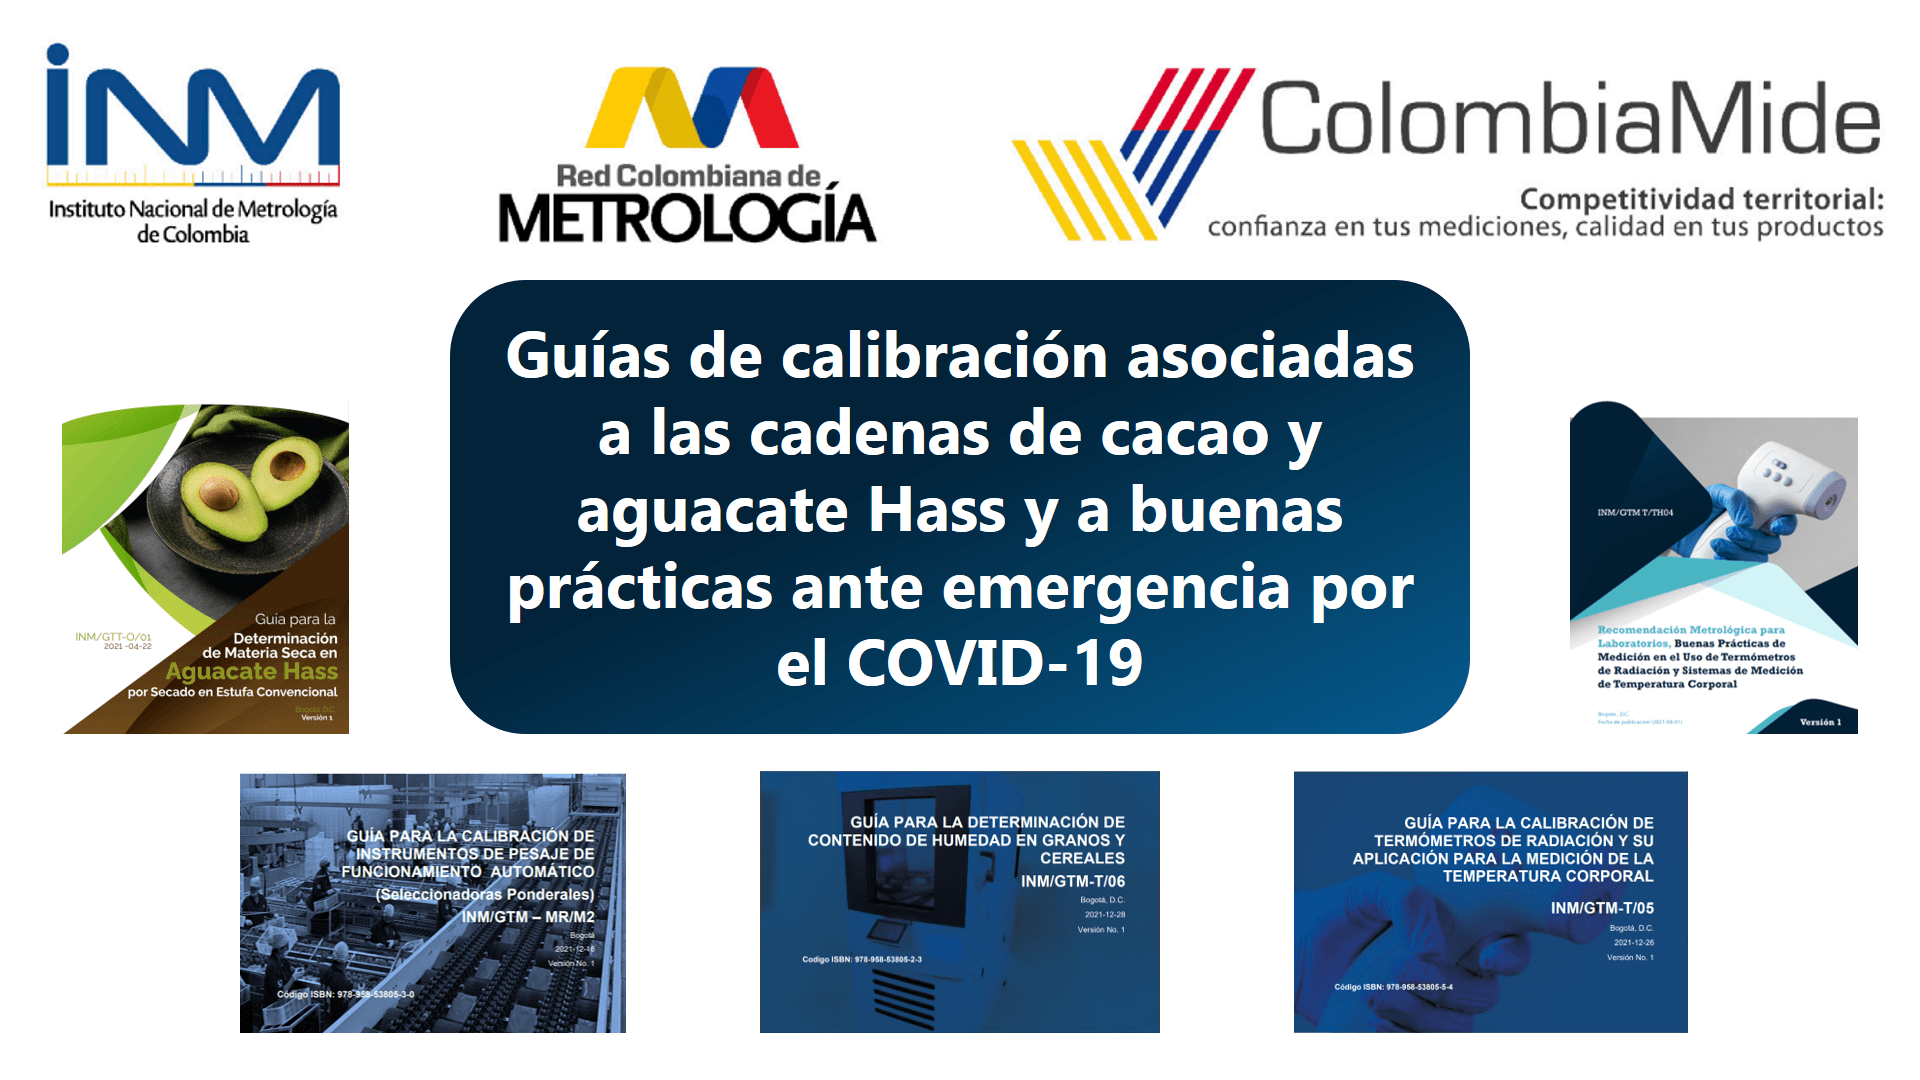 Con apoyo de ColombiaMide, INM publica Guías de calibración asociadas a las cadenas de cacao y aguacate Hass y a buenas prácticas ante emergencia por el COVID-19